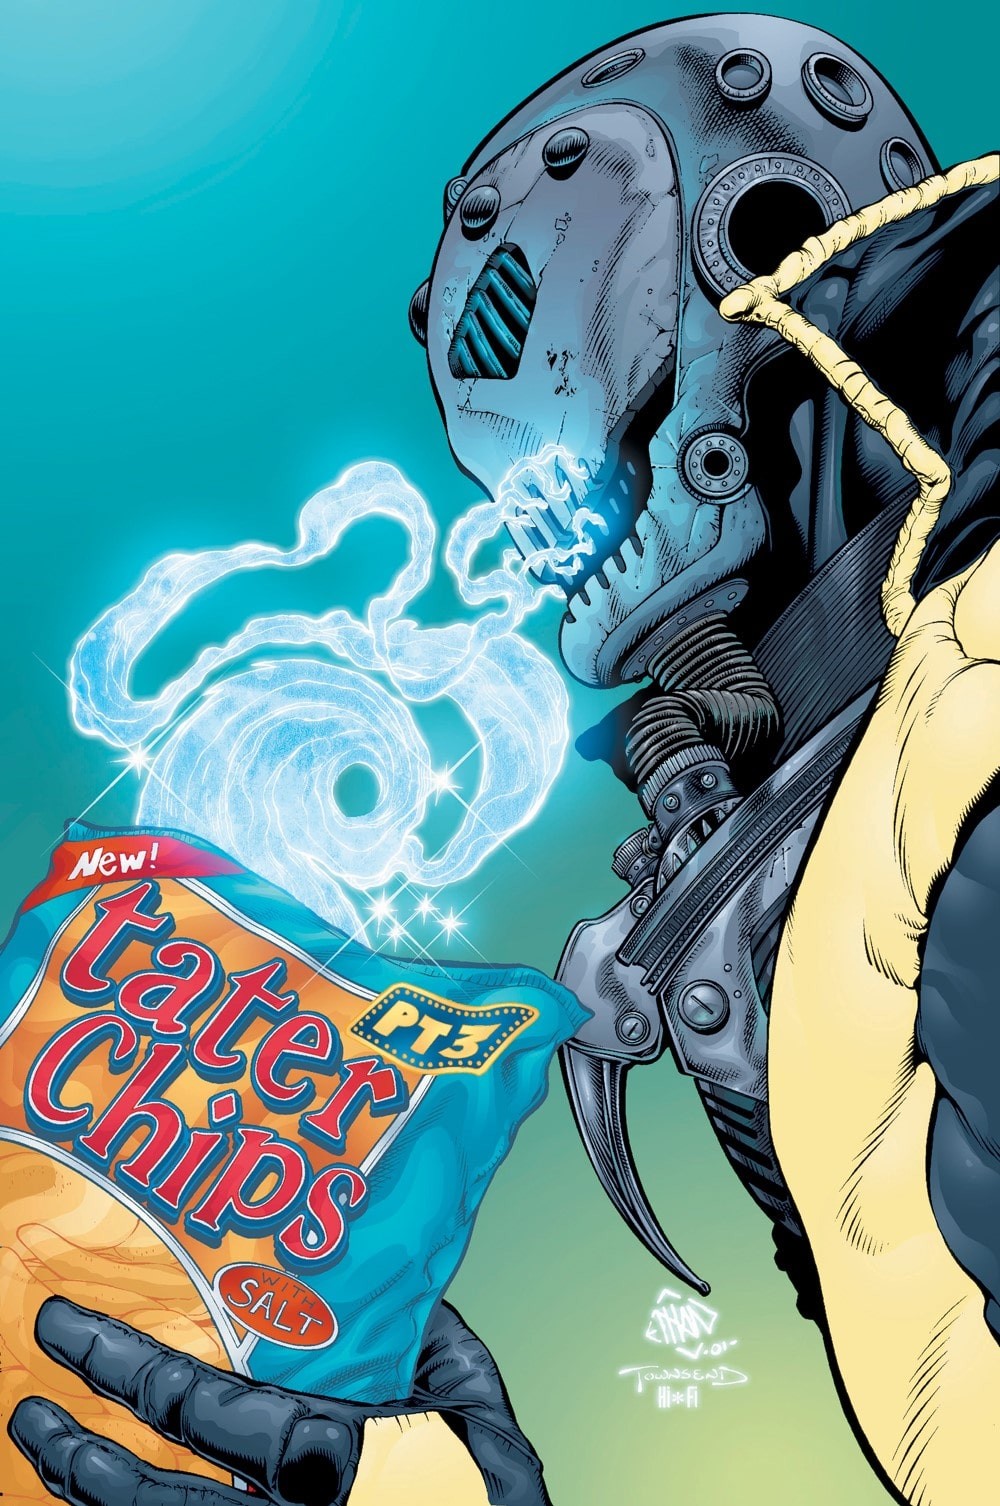 New X-Men tom 2: Piekło na Ziemi